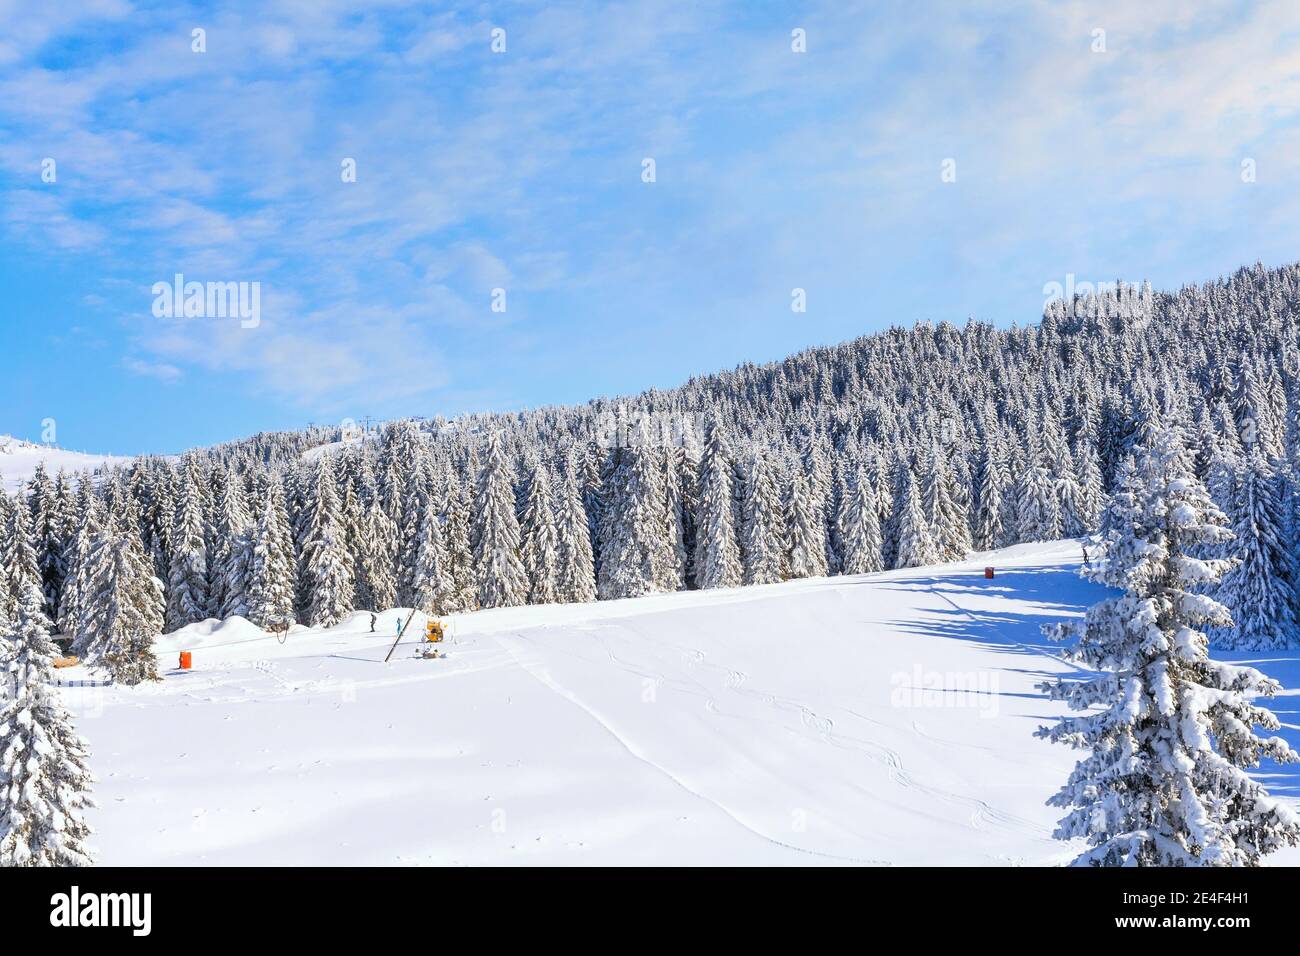 Kopaonik, Serbien Skigebiet Panorama mit Skipiste, Skifahrer, schneebedeckte Bäume im Winter Stockfoto